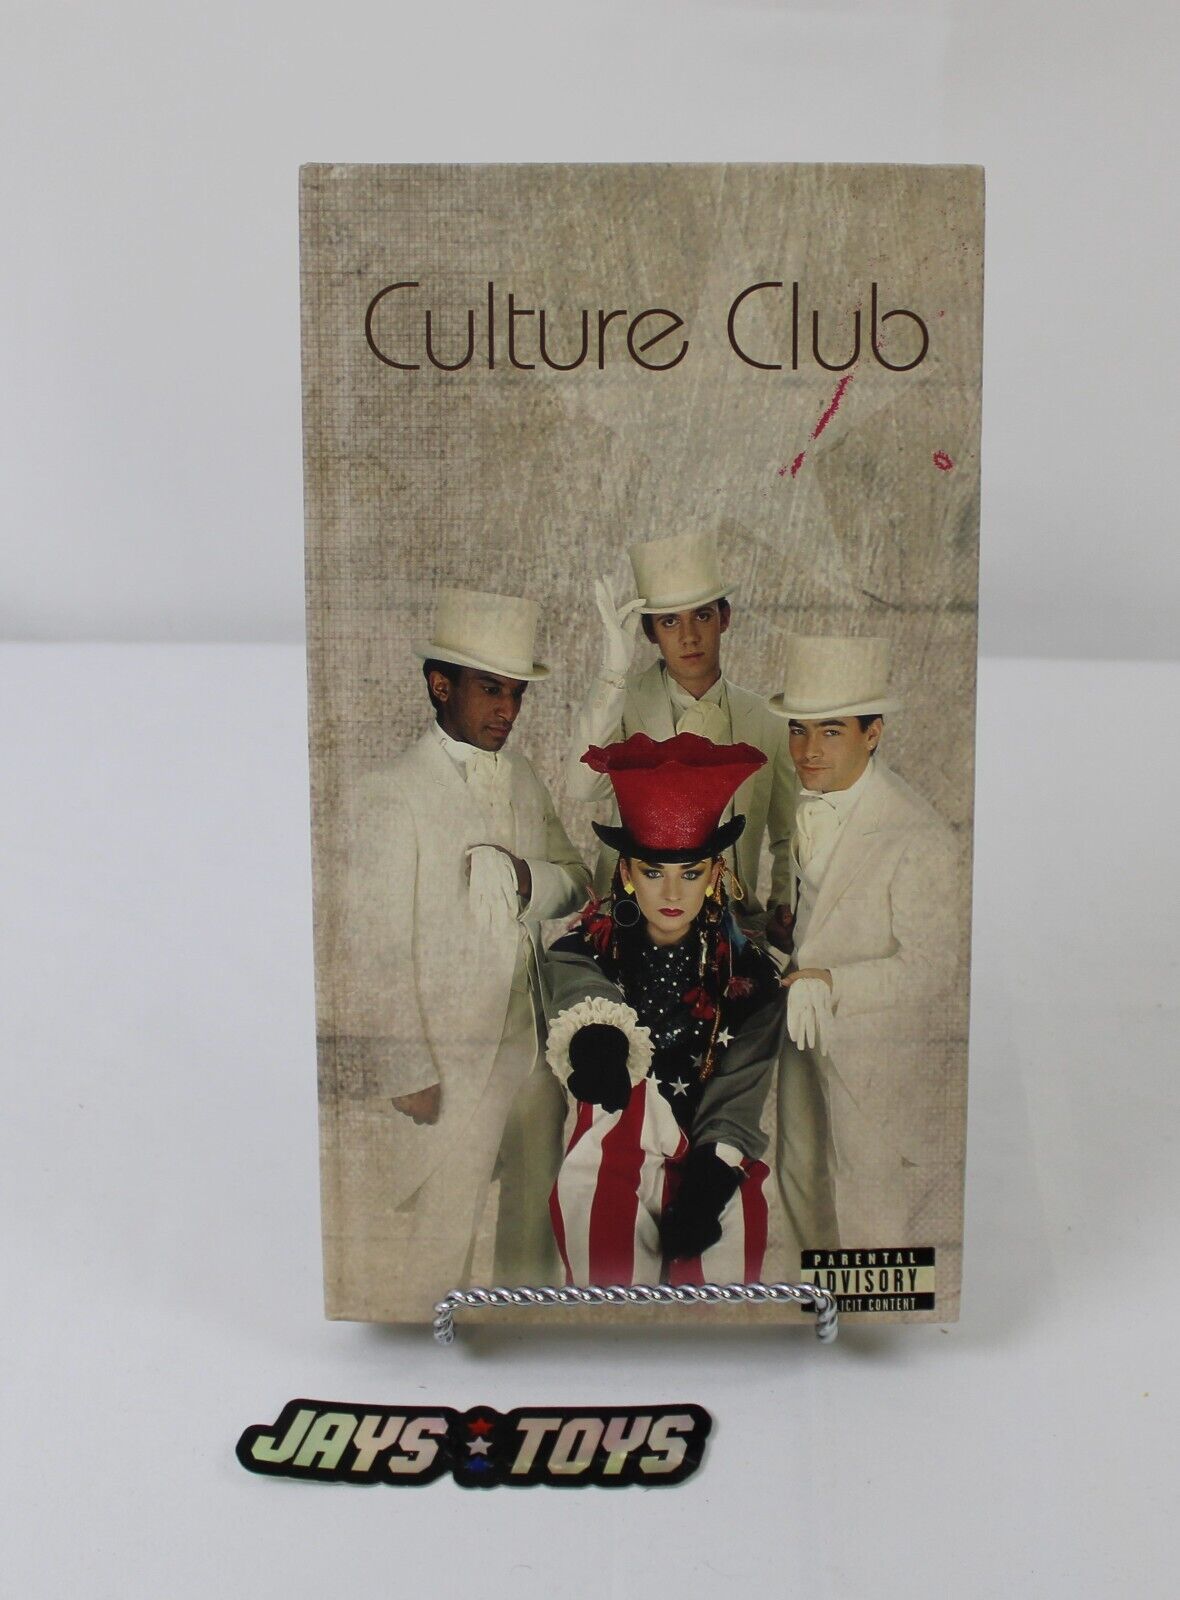 Culture Club 4-Disc CD Set 2002 Virgin Records